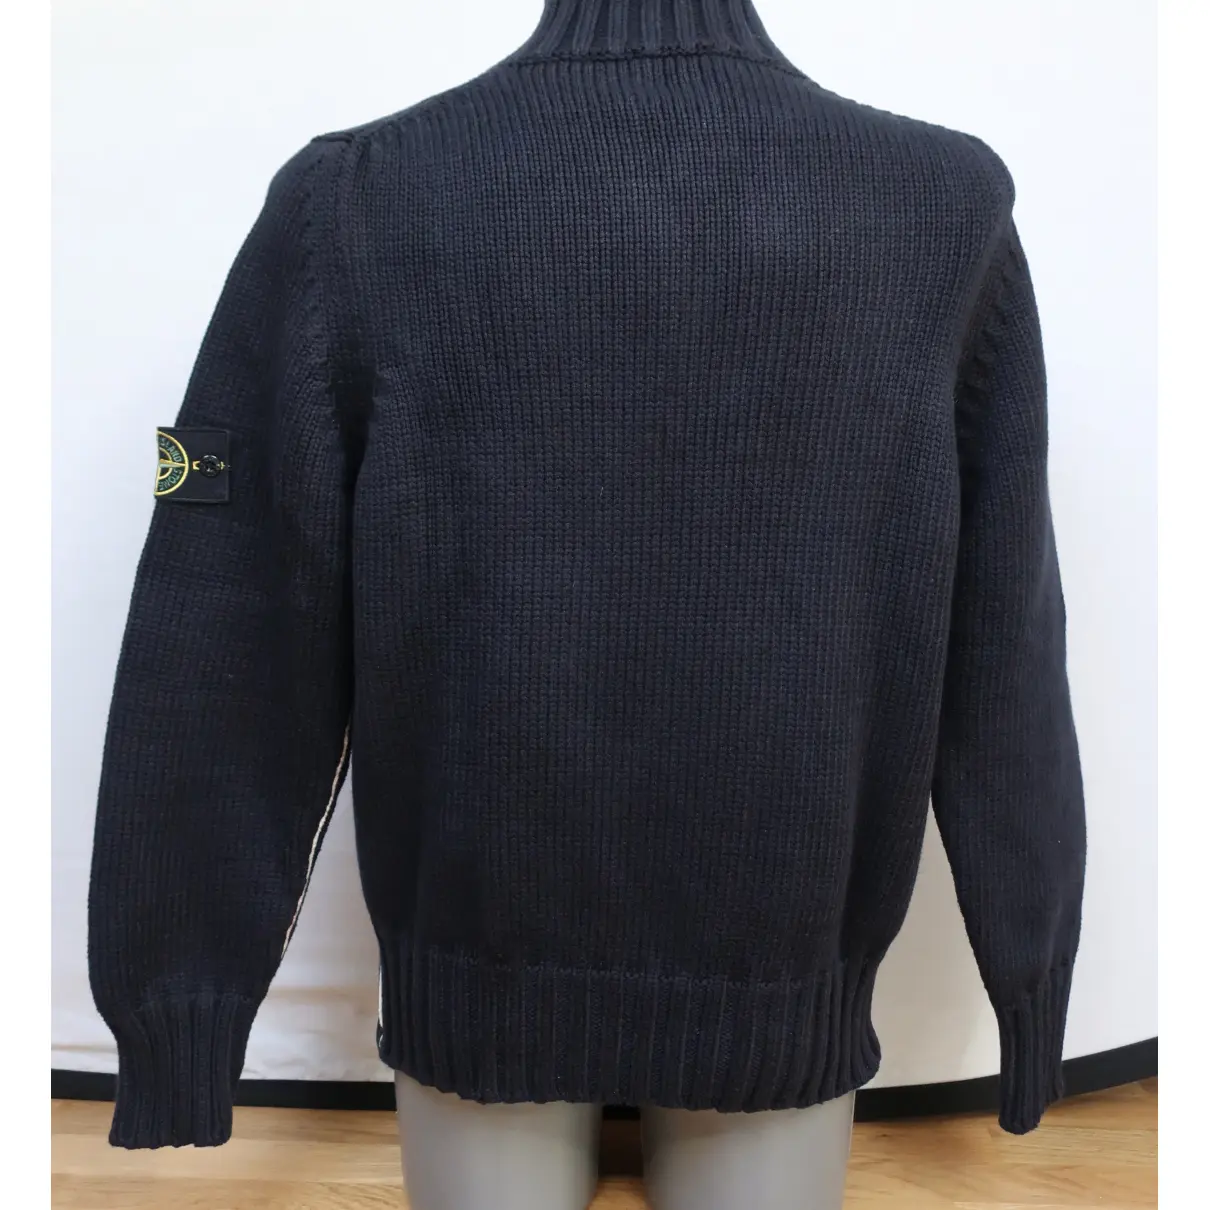 Buy Stone Island Navy Cotton Knitwear & Sweatshirt online